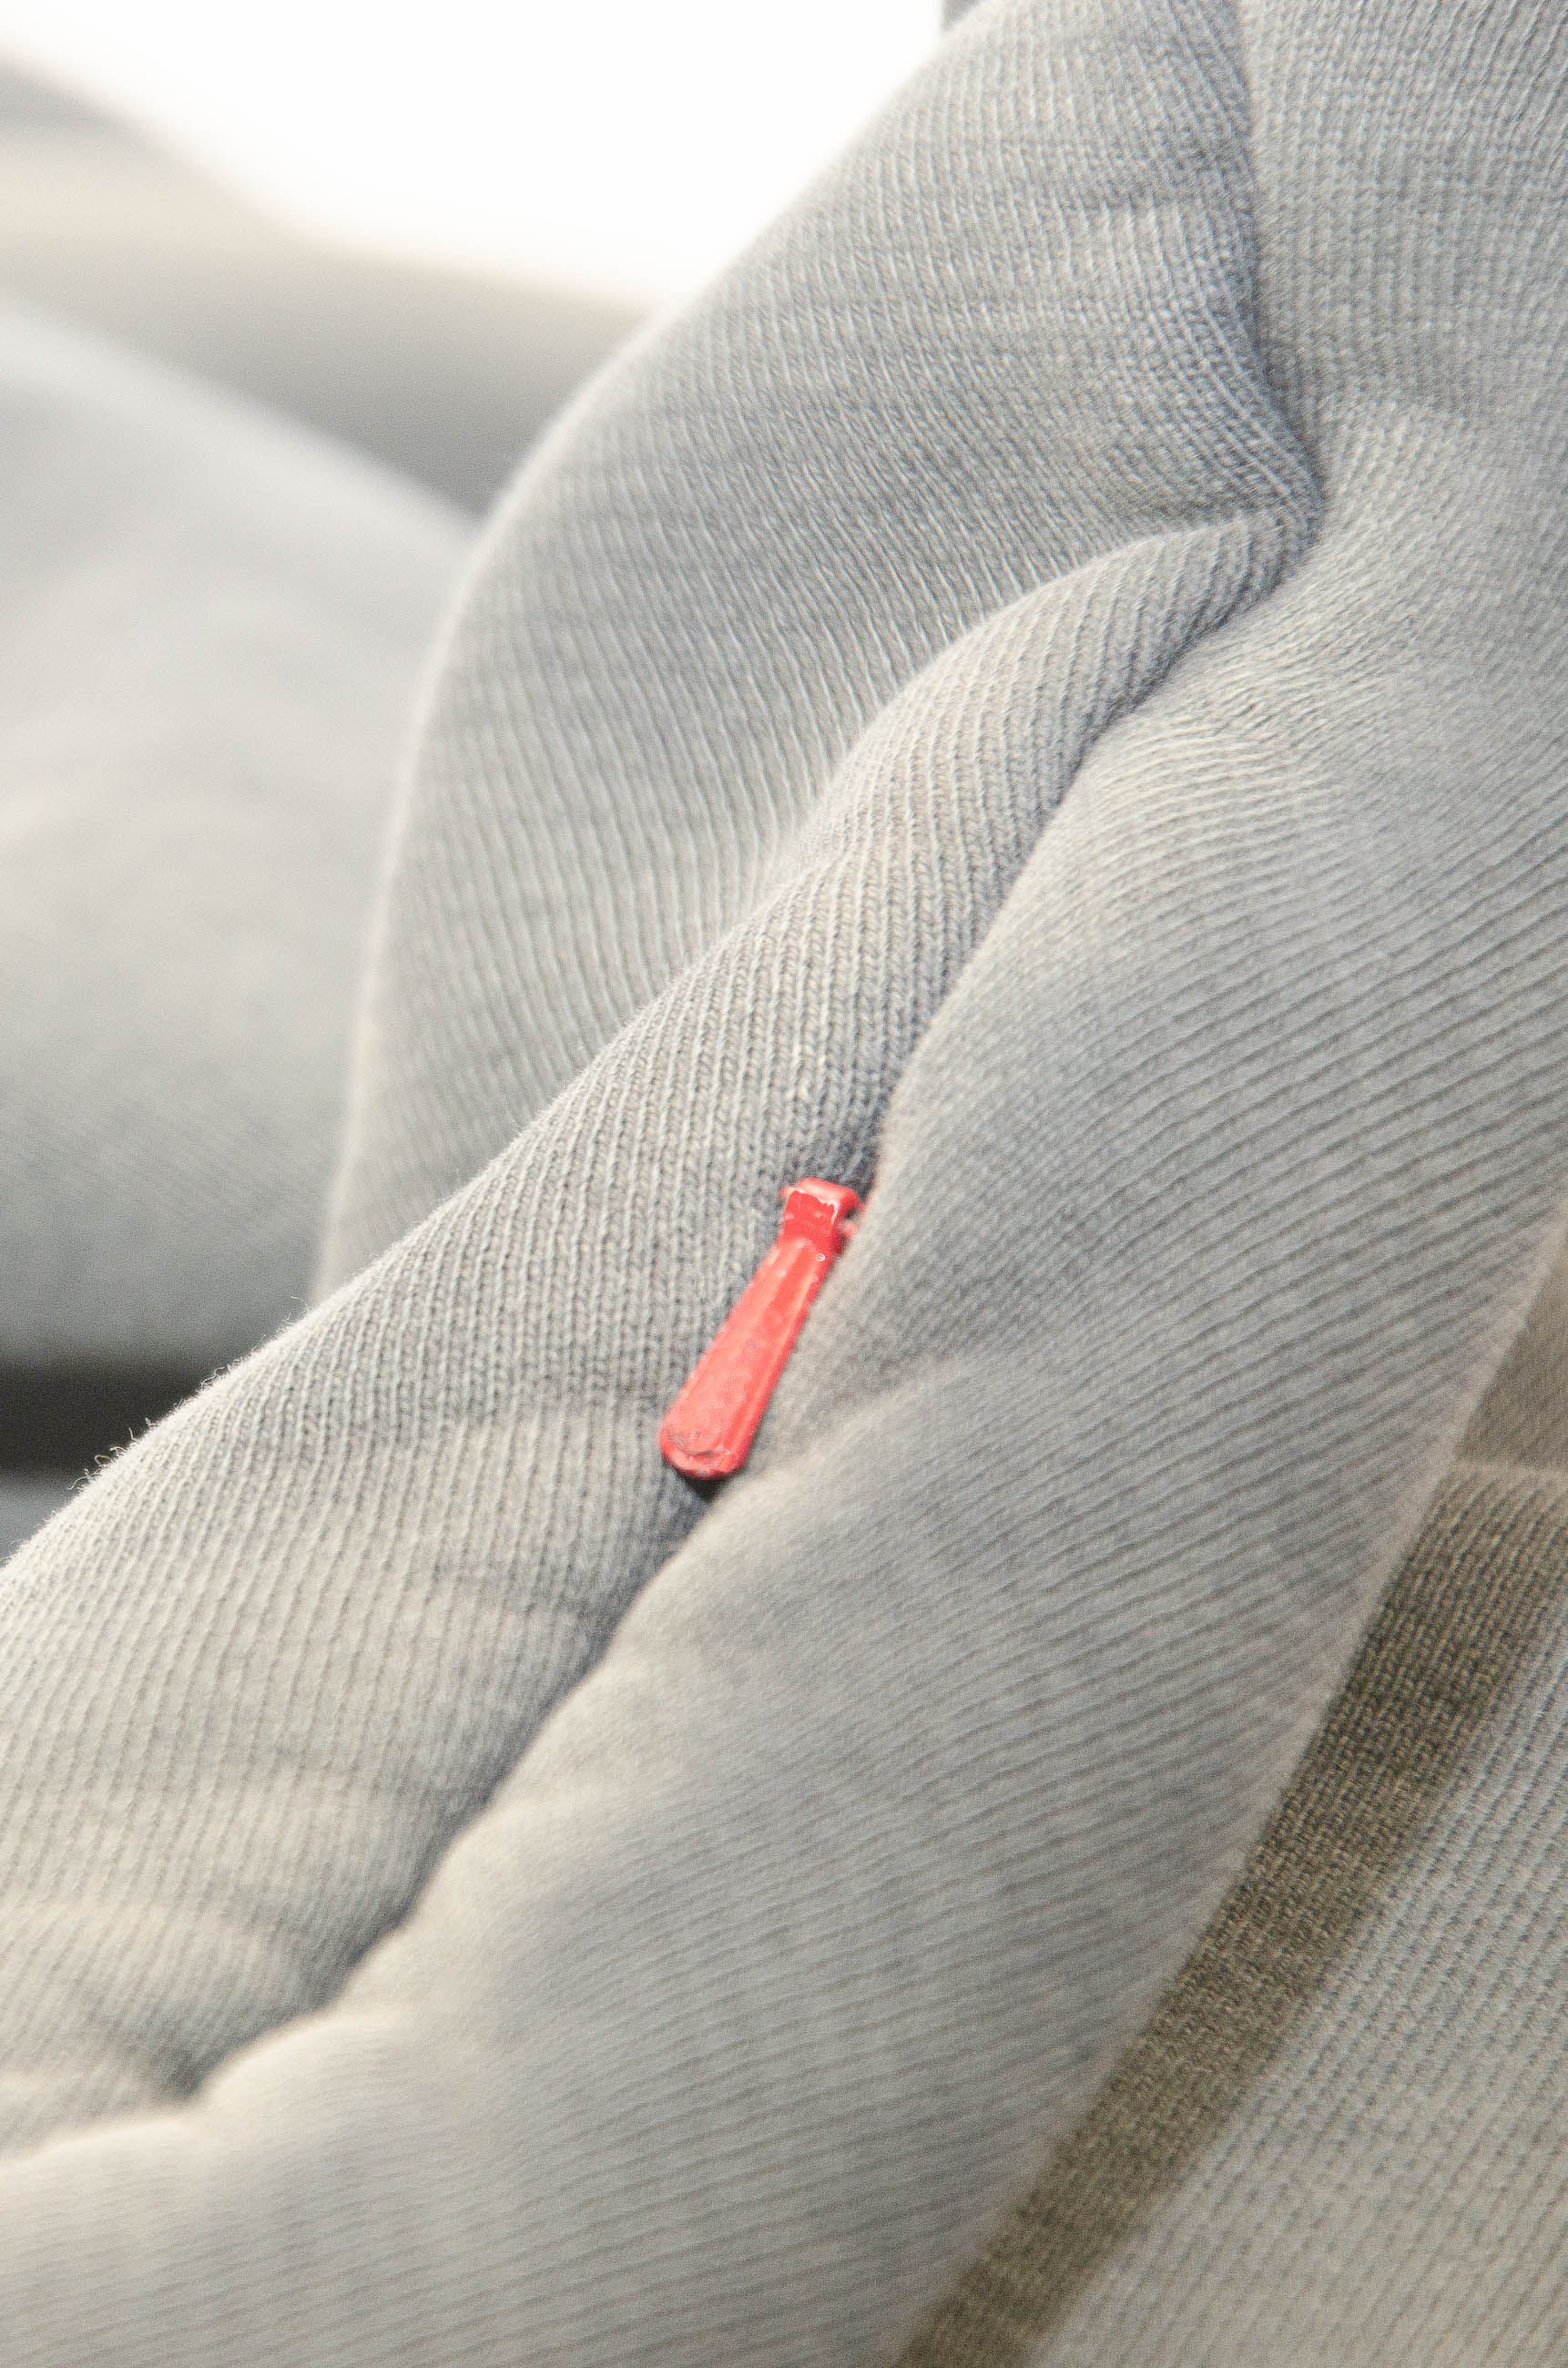 Publik Brand Single Layered Hoodie Anchor Gray Heavyweight Fleece, all made in USA, hidden pocket with YKK zipper